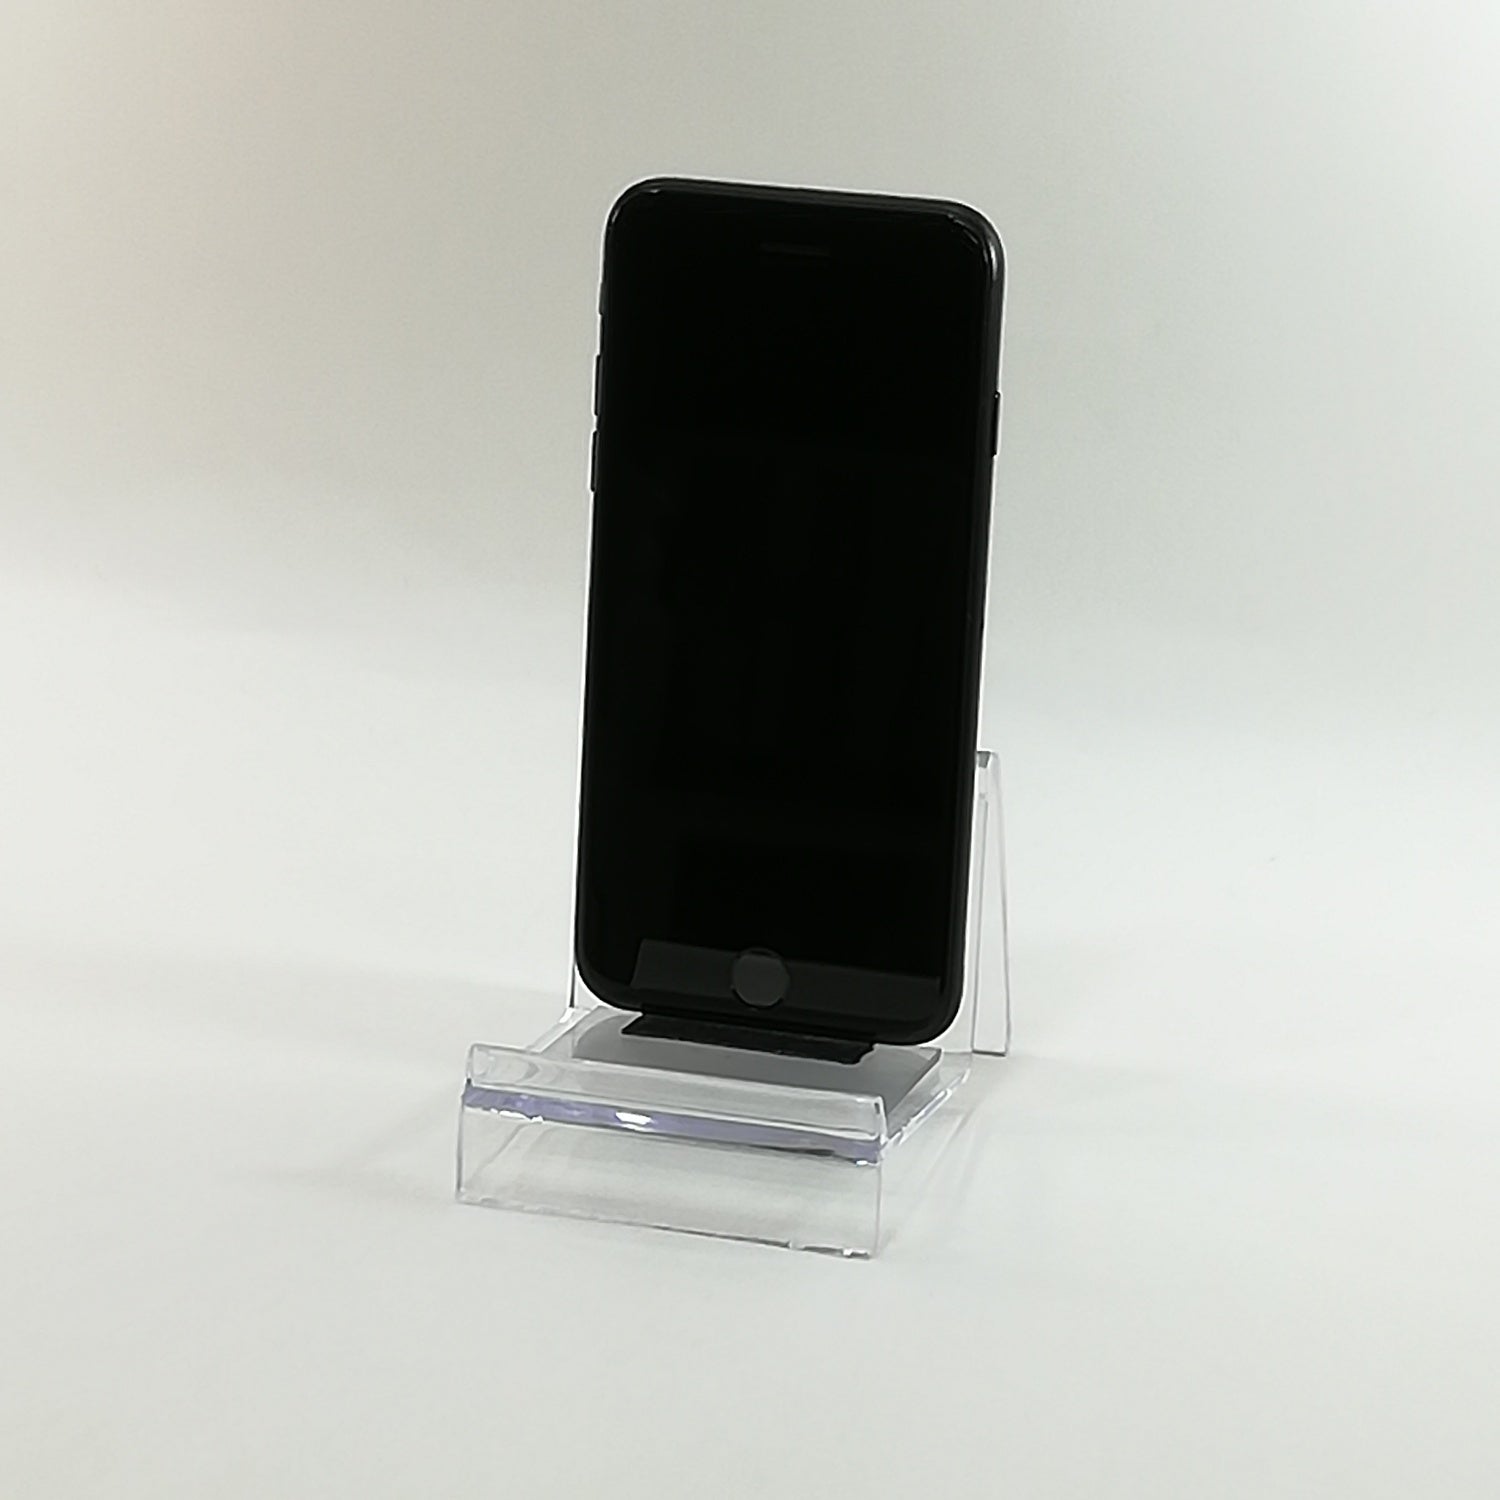 割引価格iPhone SE 第2世代 64GB MX9R2J/A ブラック A2296 スマートフォン本体